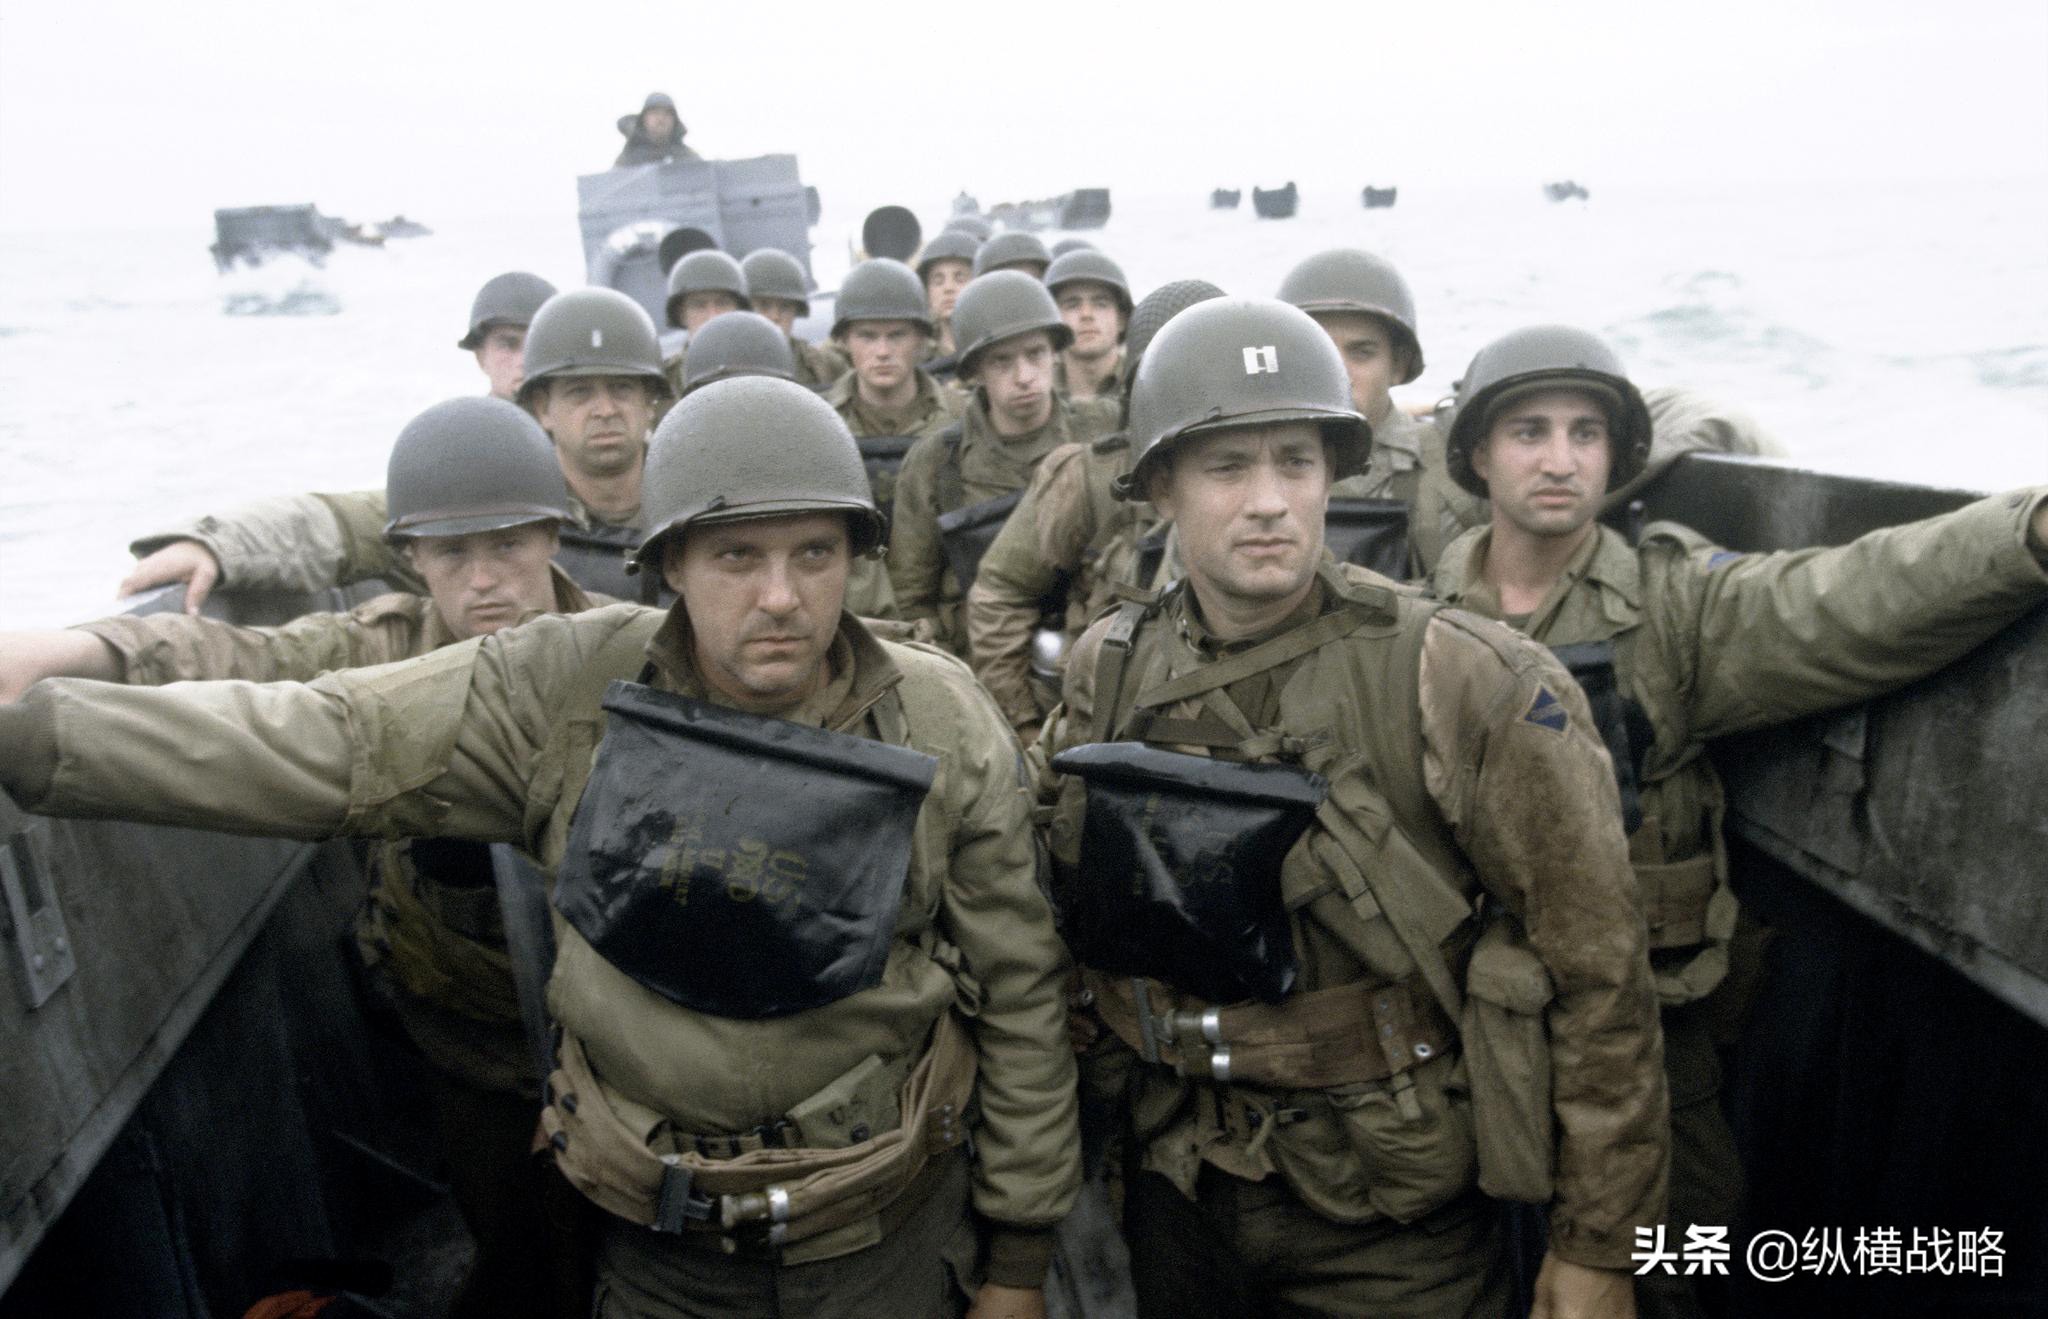 史诗级战争大片：诺曼底登陆10部场面恢宏、战斗激烈的电影推荐